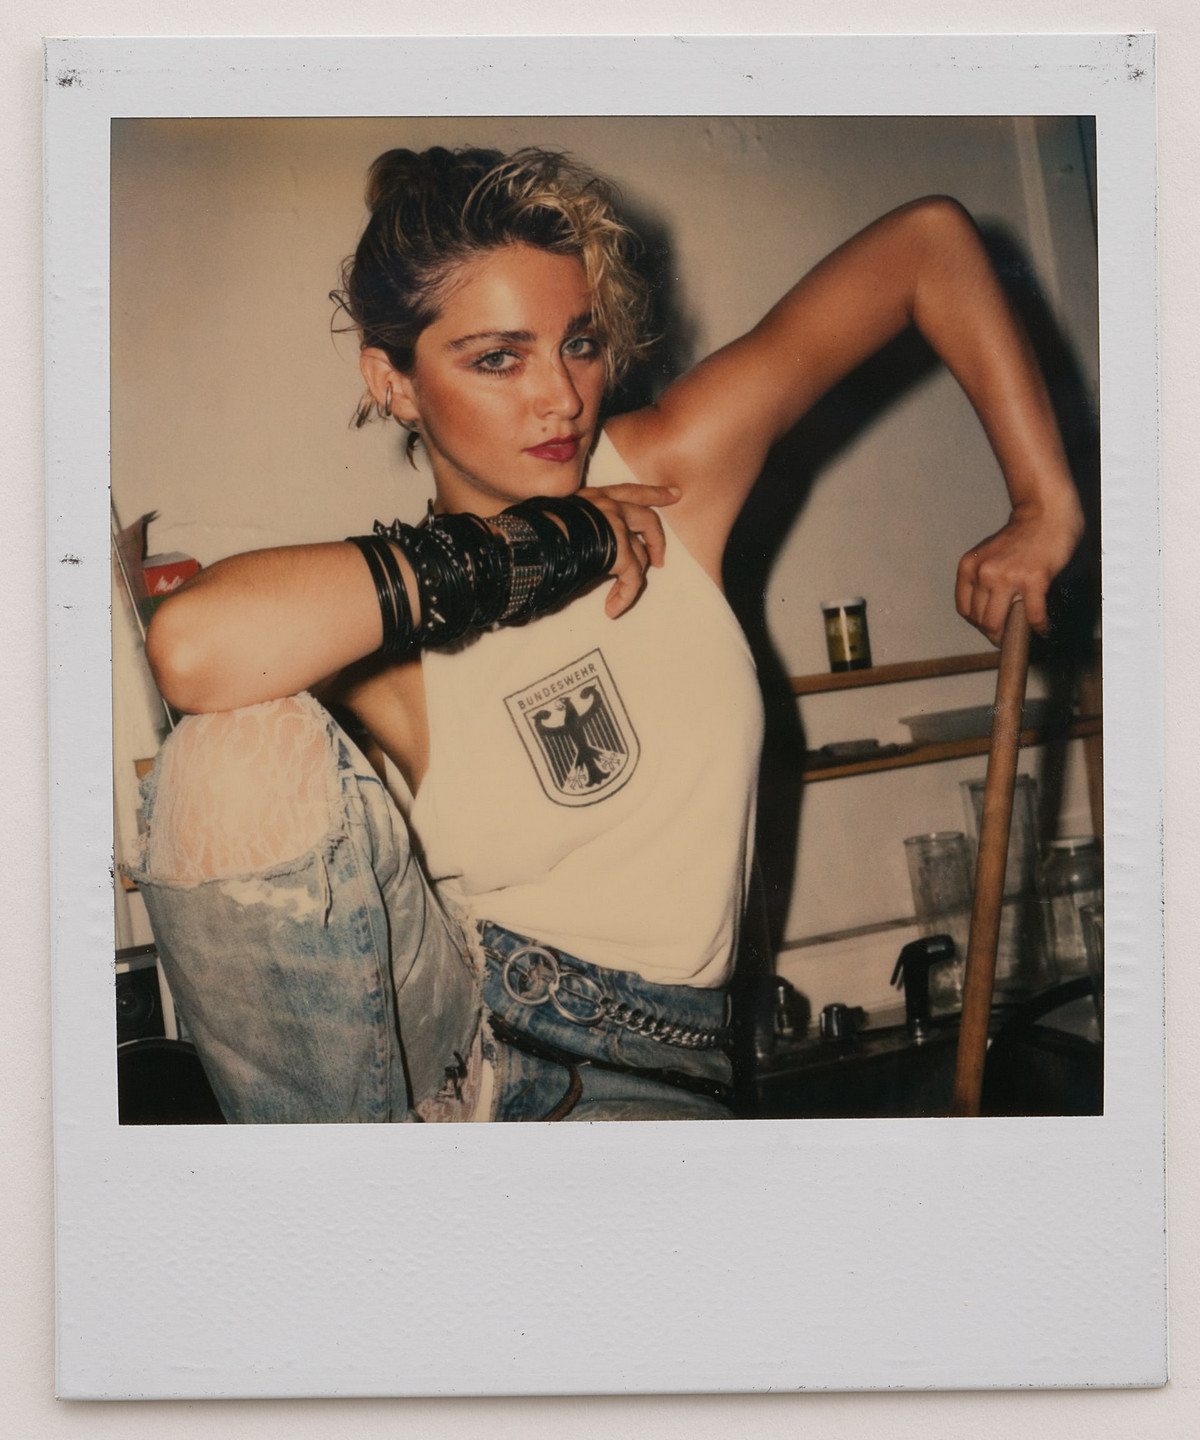 Мадонна на пороге славы в полароидных фотографиях 1983 года Ричарда Кормана 19